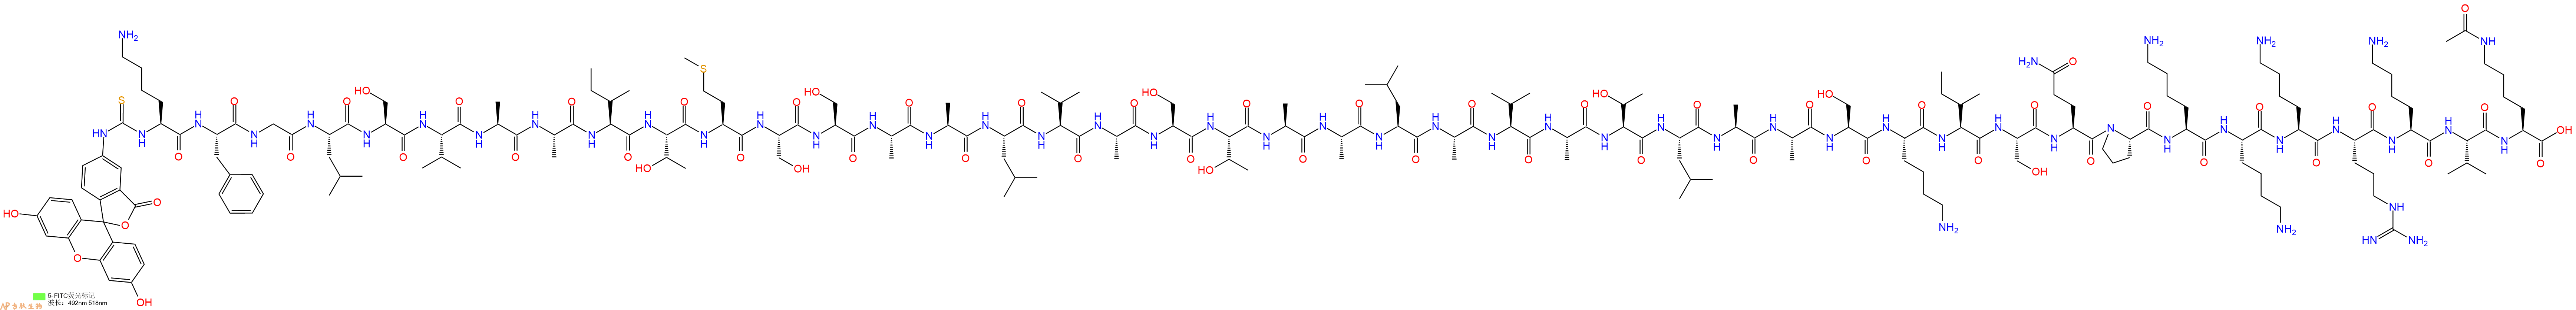 专肽生物产品5FITC-Lys-Phe-Gly-Leu-Ser-Val-Ala-Ala-Ile-Thr-Met-